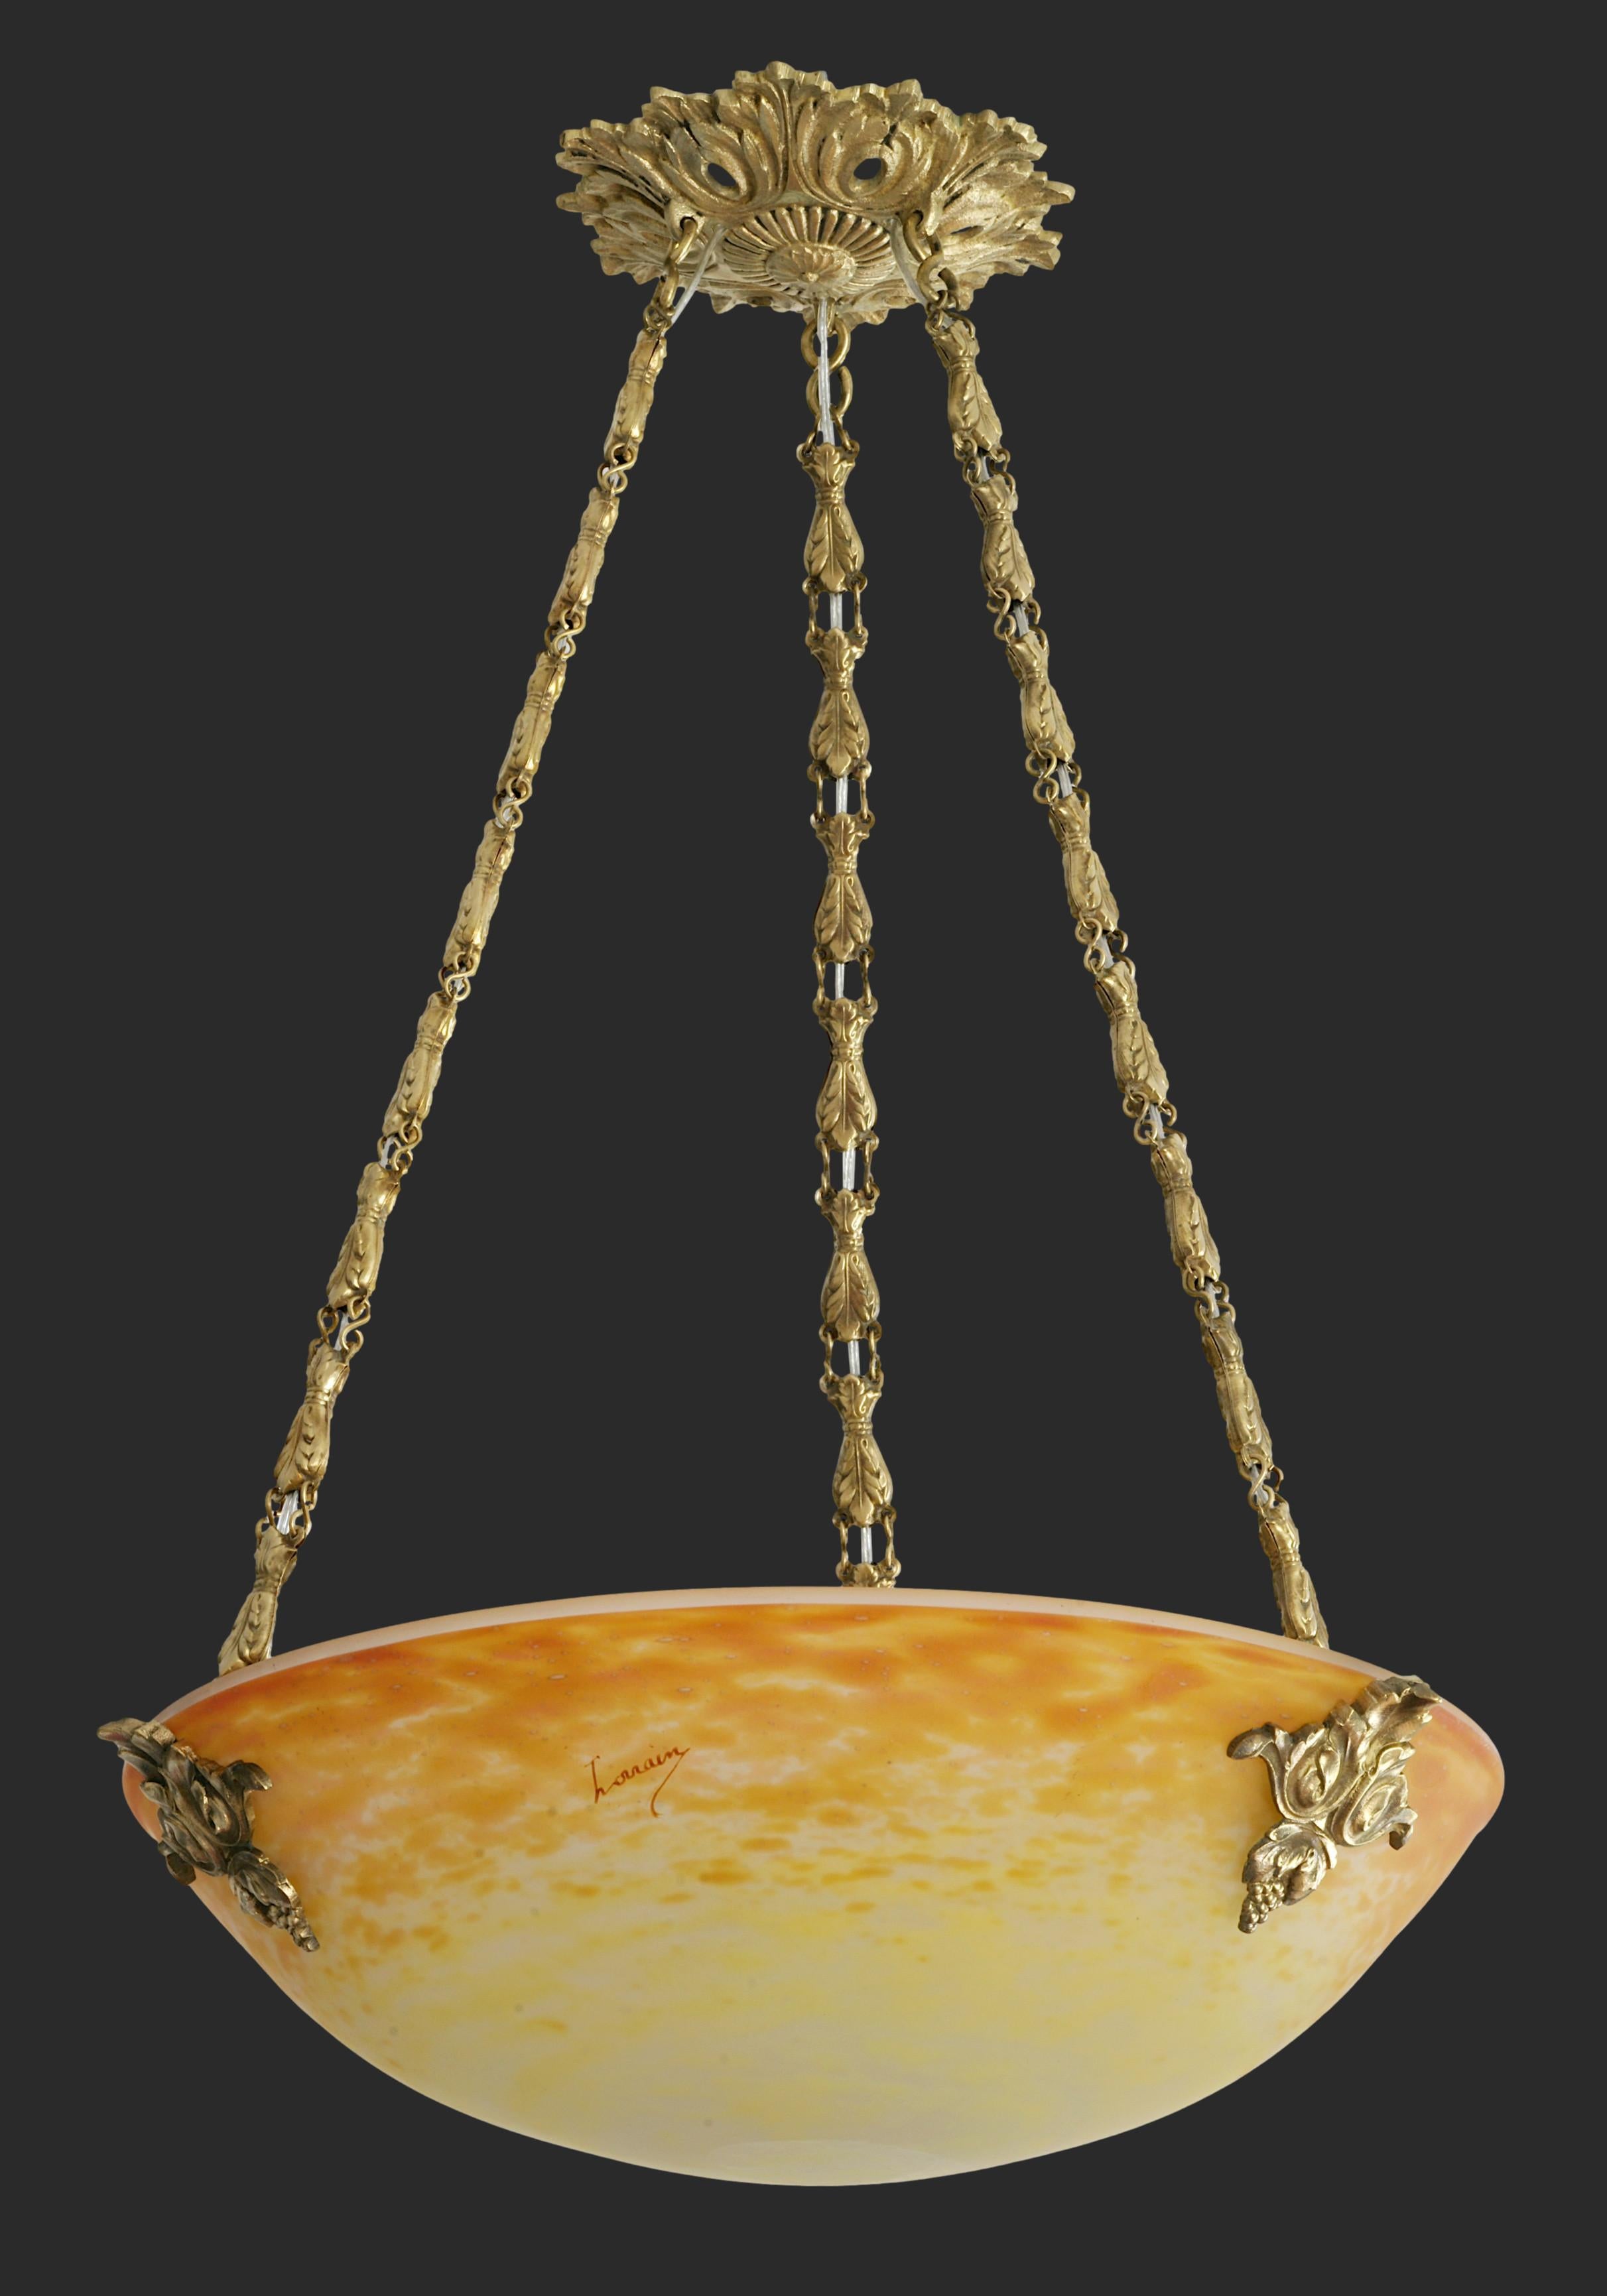 Französischer Art-Déco-Hängeleuchter von Daum (Croismare), Frankreich, Ende der 1920er Jahre. Der mundgeblasene doppelte Glasschirm von Daum hängt an seiner Halterung aus Bronze und Messing. Maße: Höhe: 20